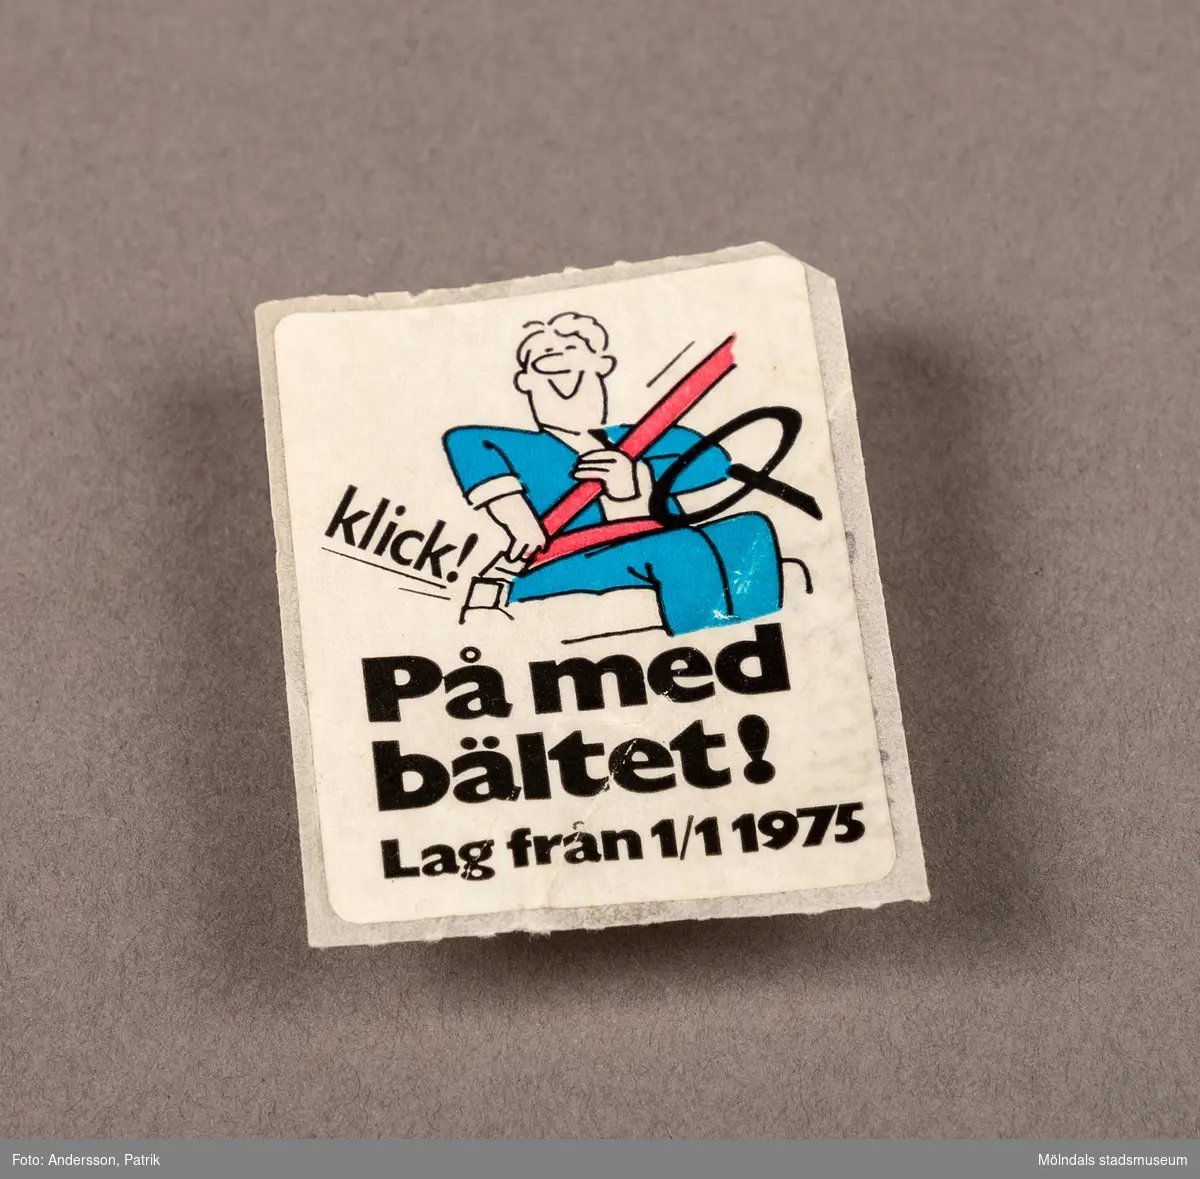 Klistermärke som föreställer en man som tar på sig ett bilbälte.

På märket står det: På med bältet! Lag från 1/1 1975.